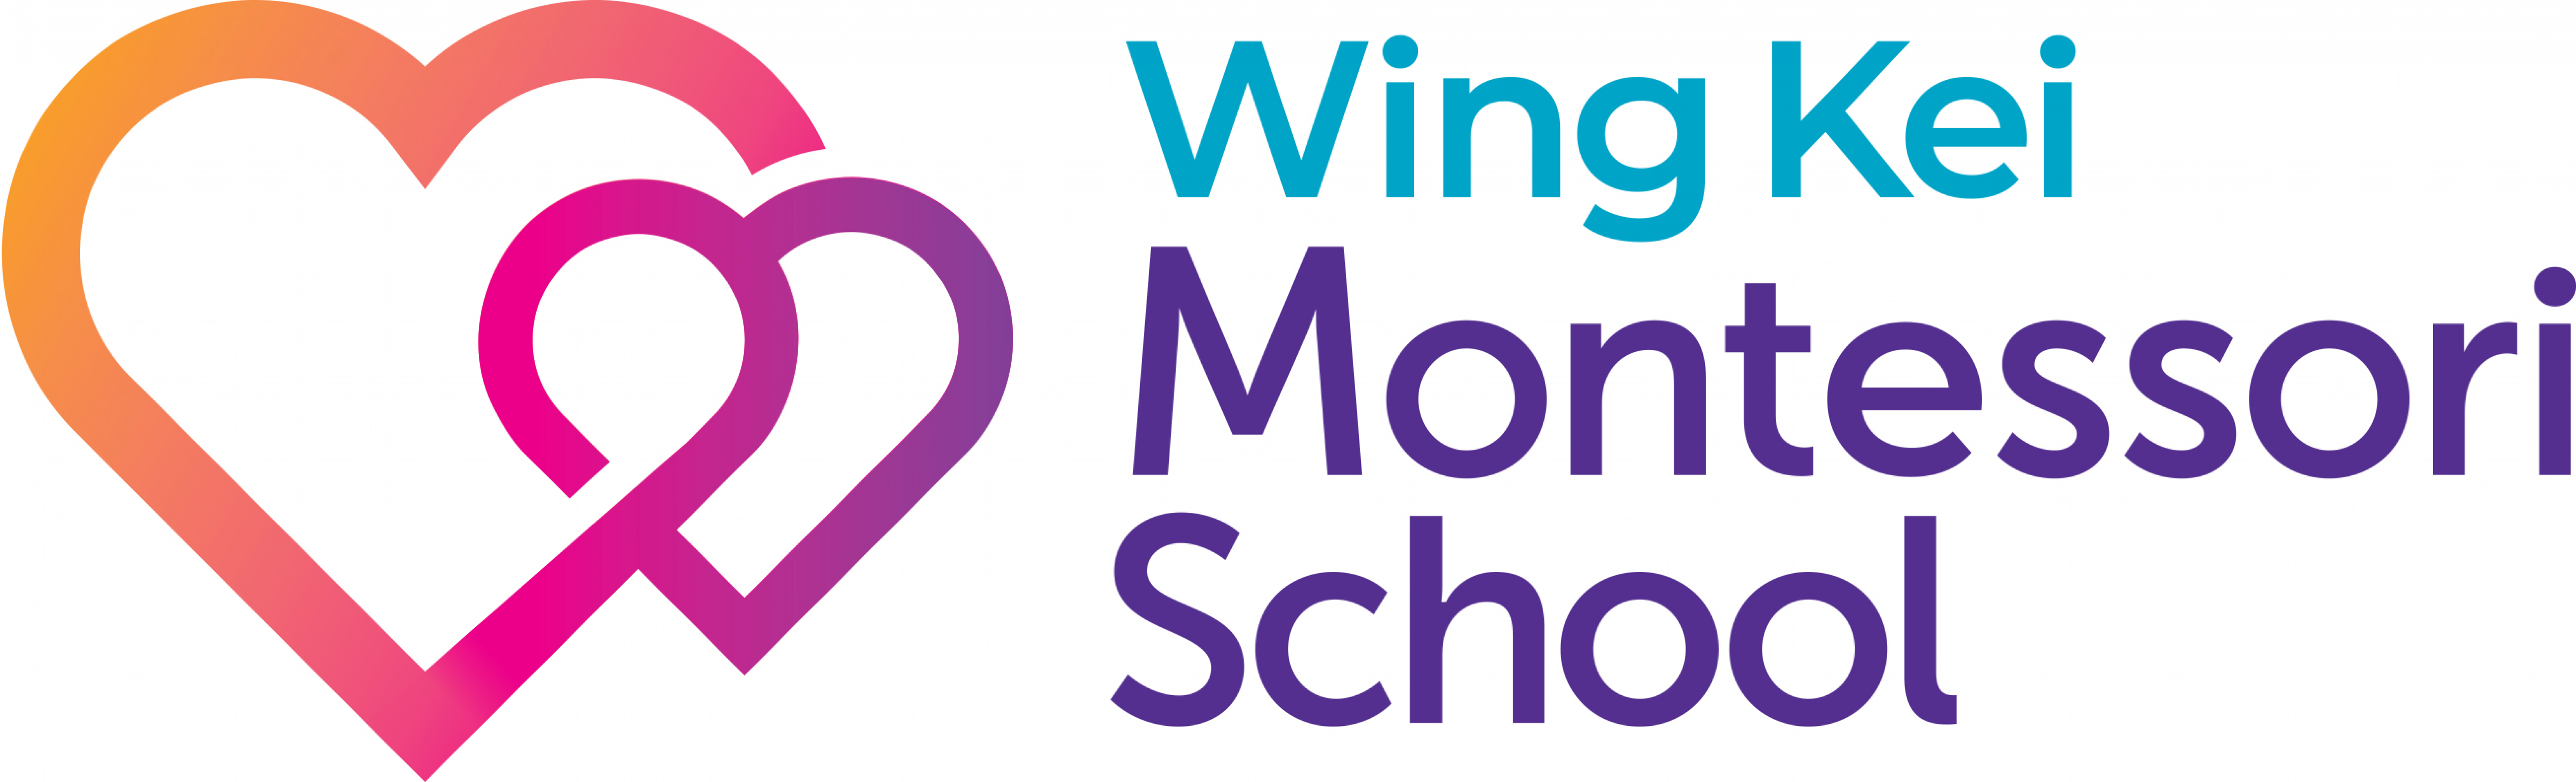 Wing Kei Montessori